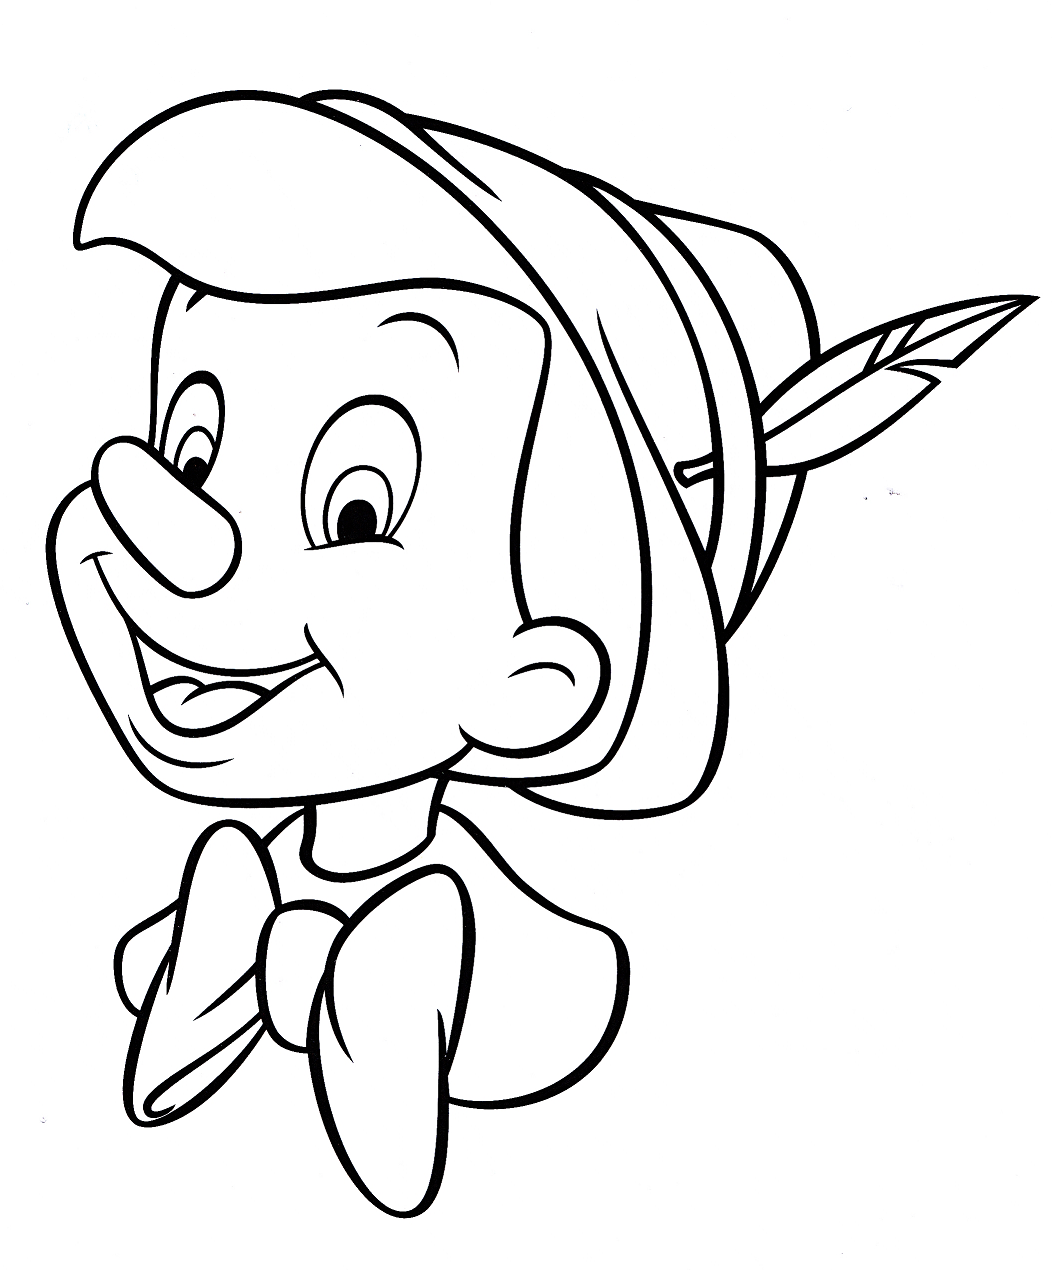 Tranh tô màu Pinocchio cho bé đẹp nhất - Tuyển tập tranh tô màu Cậu Bé Người Gỗ Pinocchio đẹp nhất cho bé